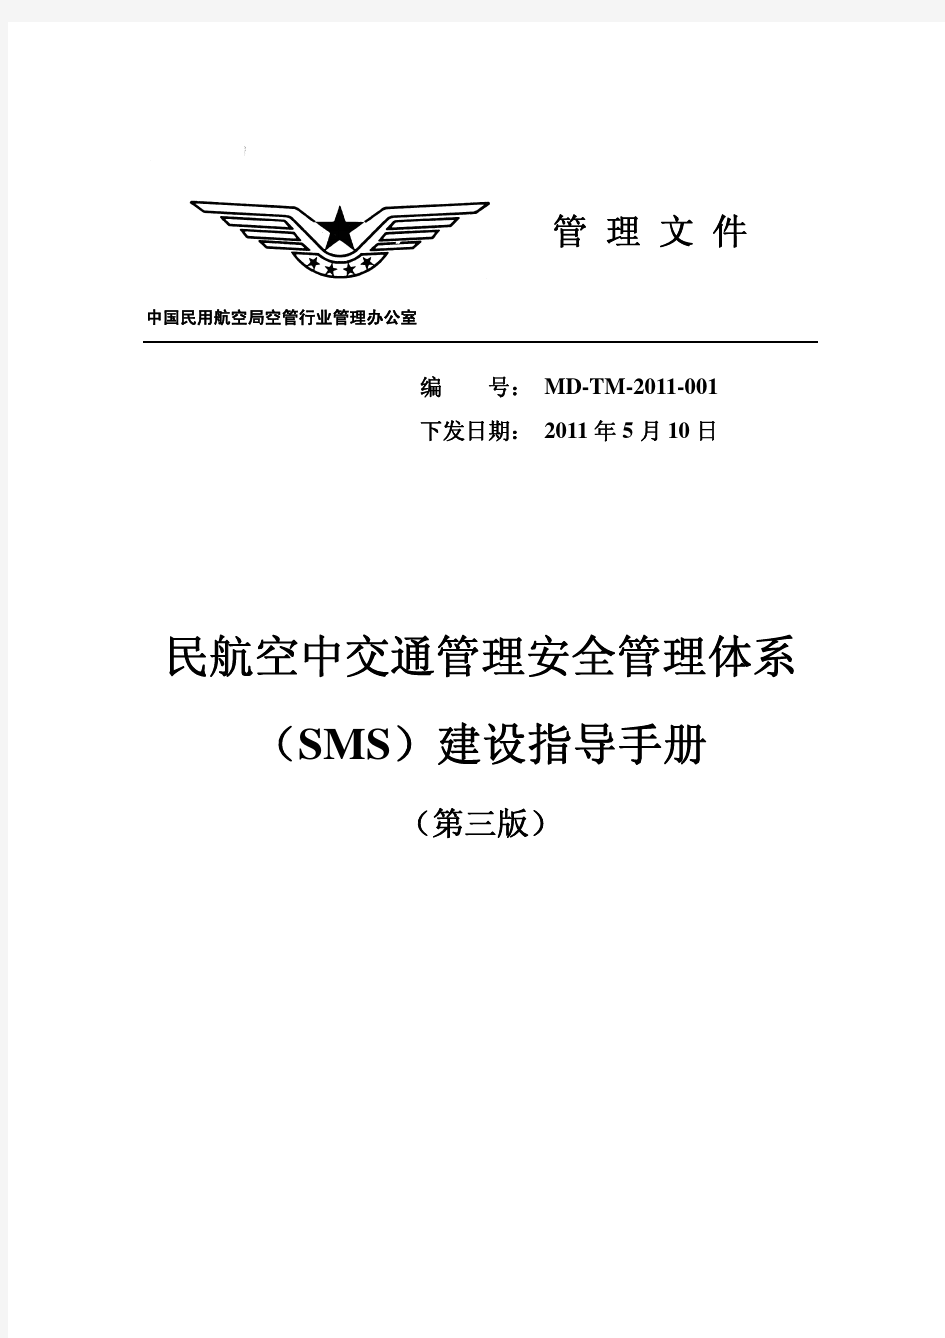 20110523民航空中交通管理安全管理体系(SMS)建设指导手册(第三版)(MD-TM-2011-001)